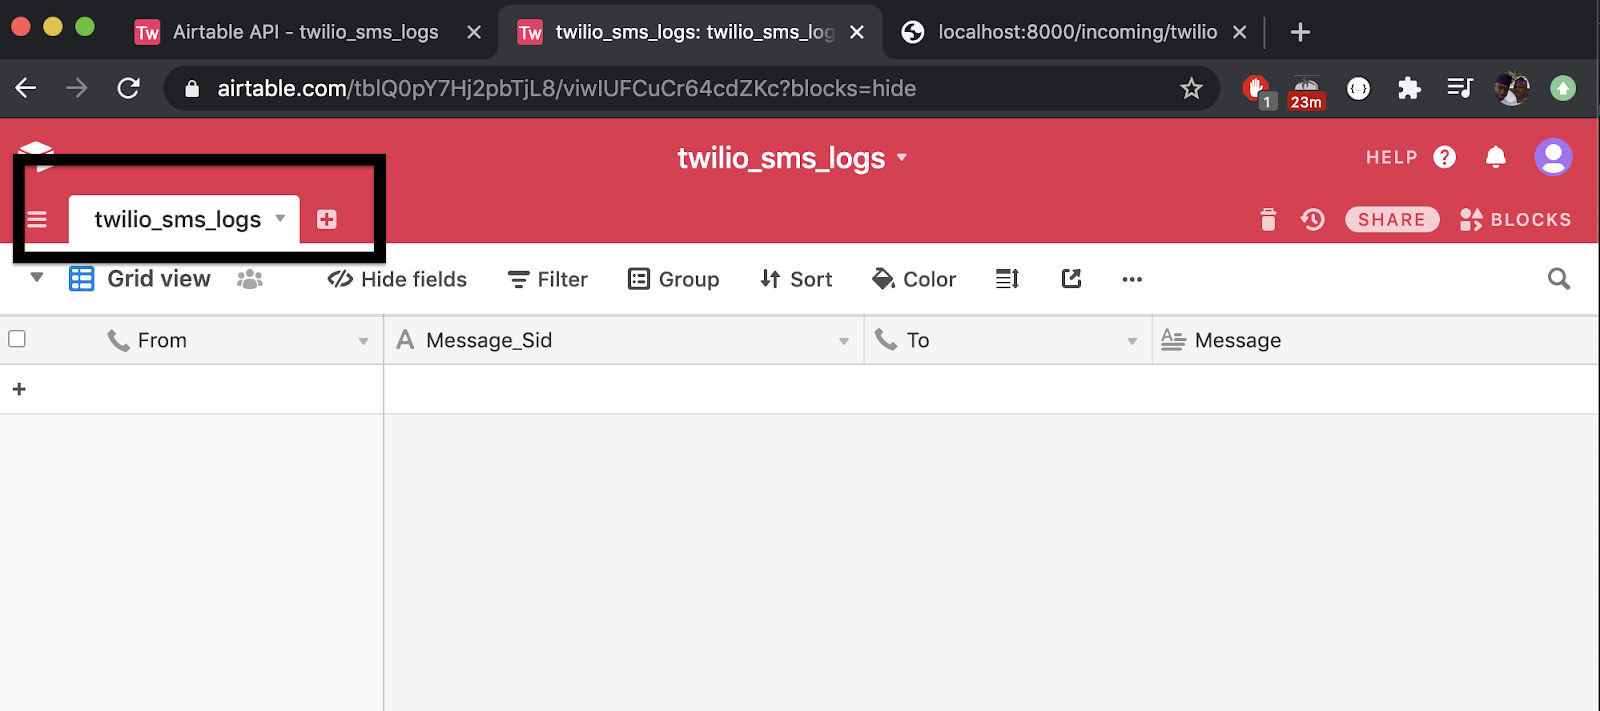 twilio_sms_logs table